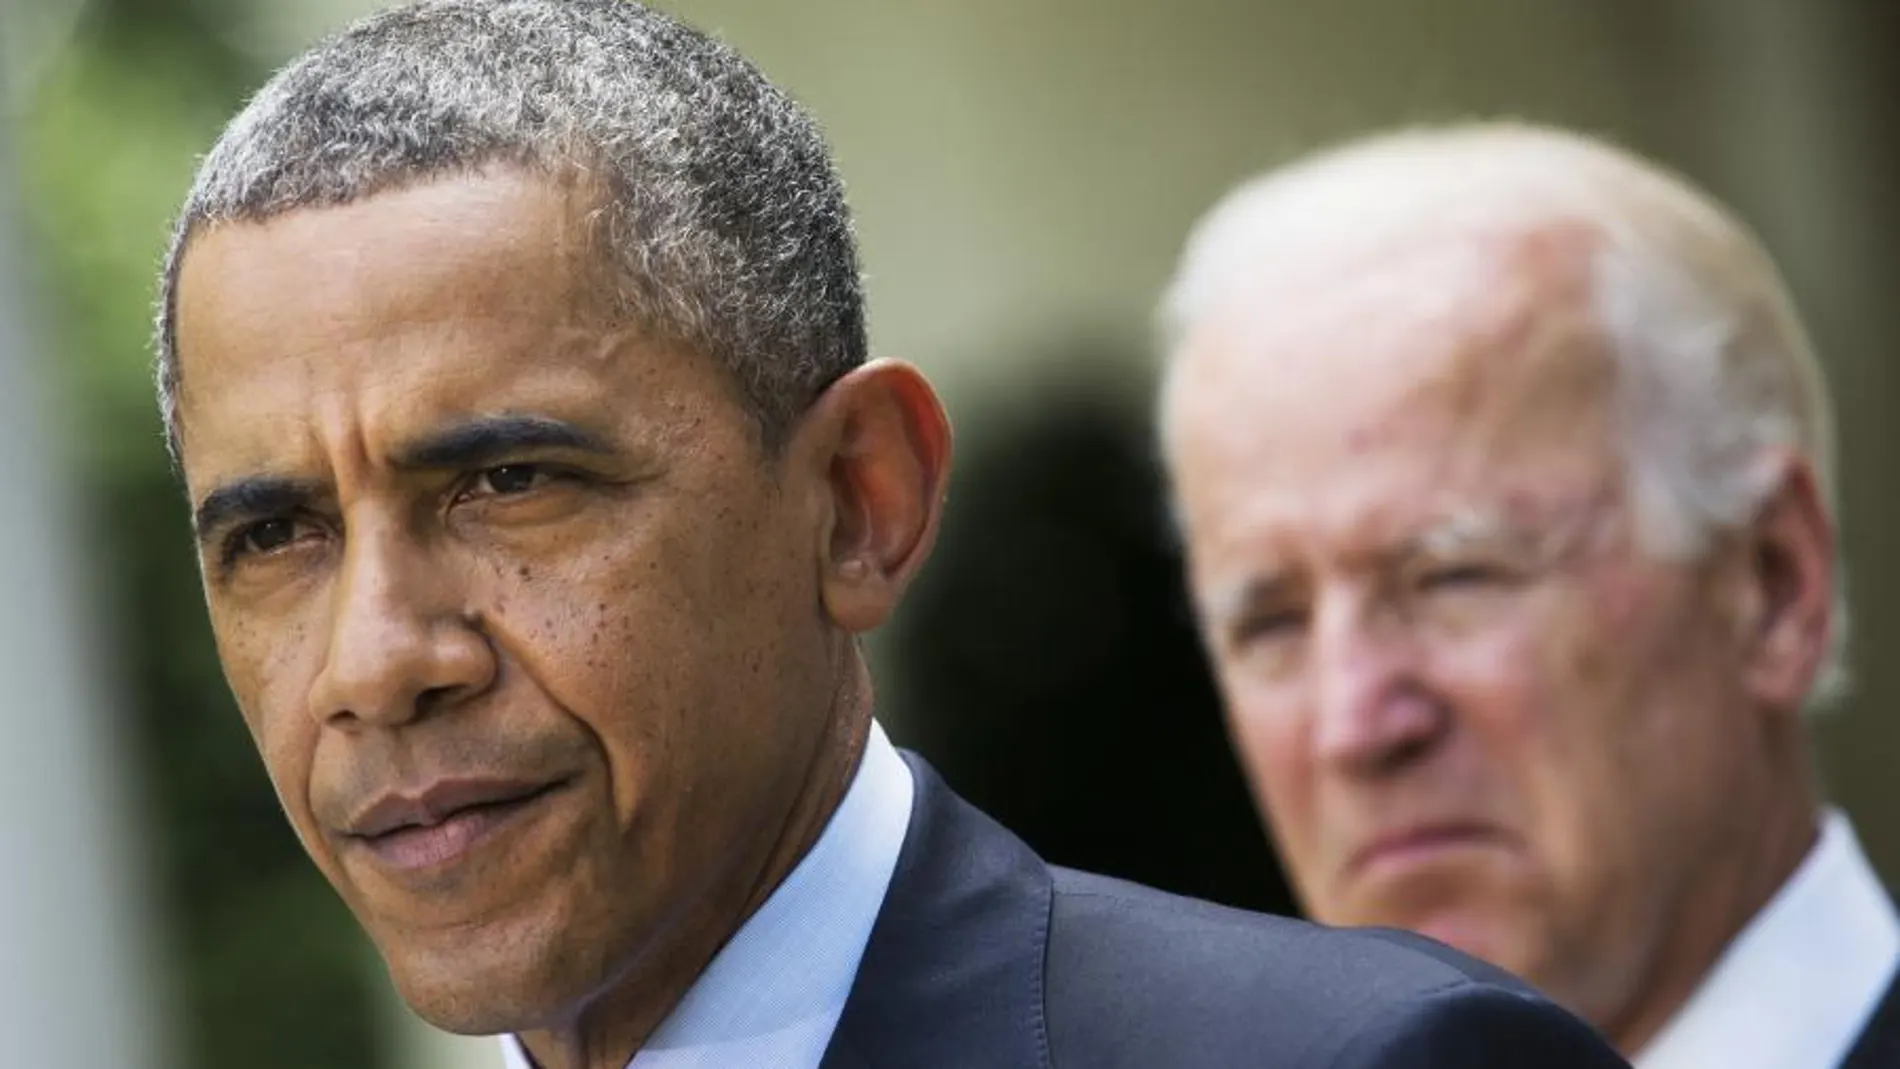 Barack Obama acompañado por el vicepresidente Joe Biden